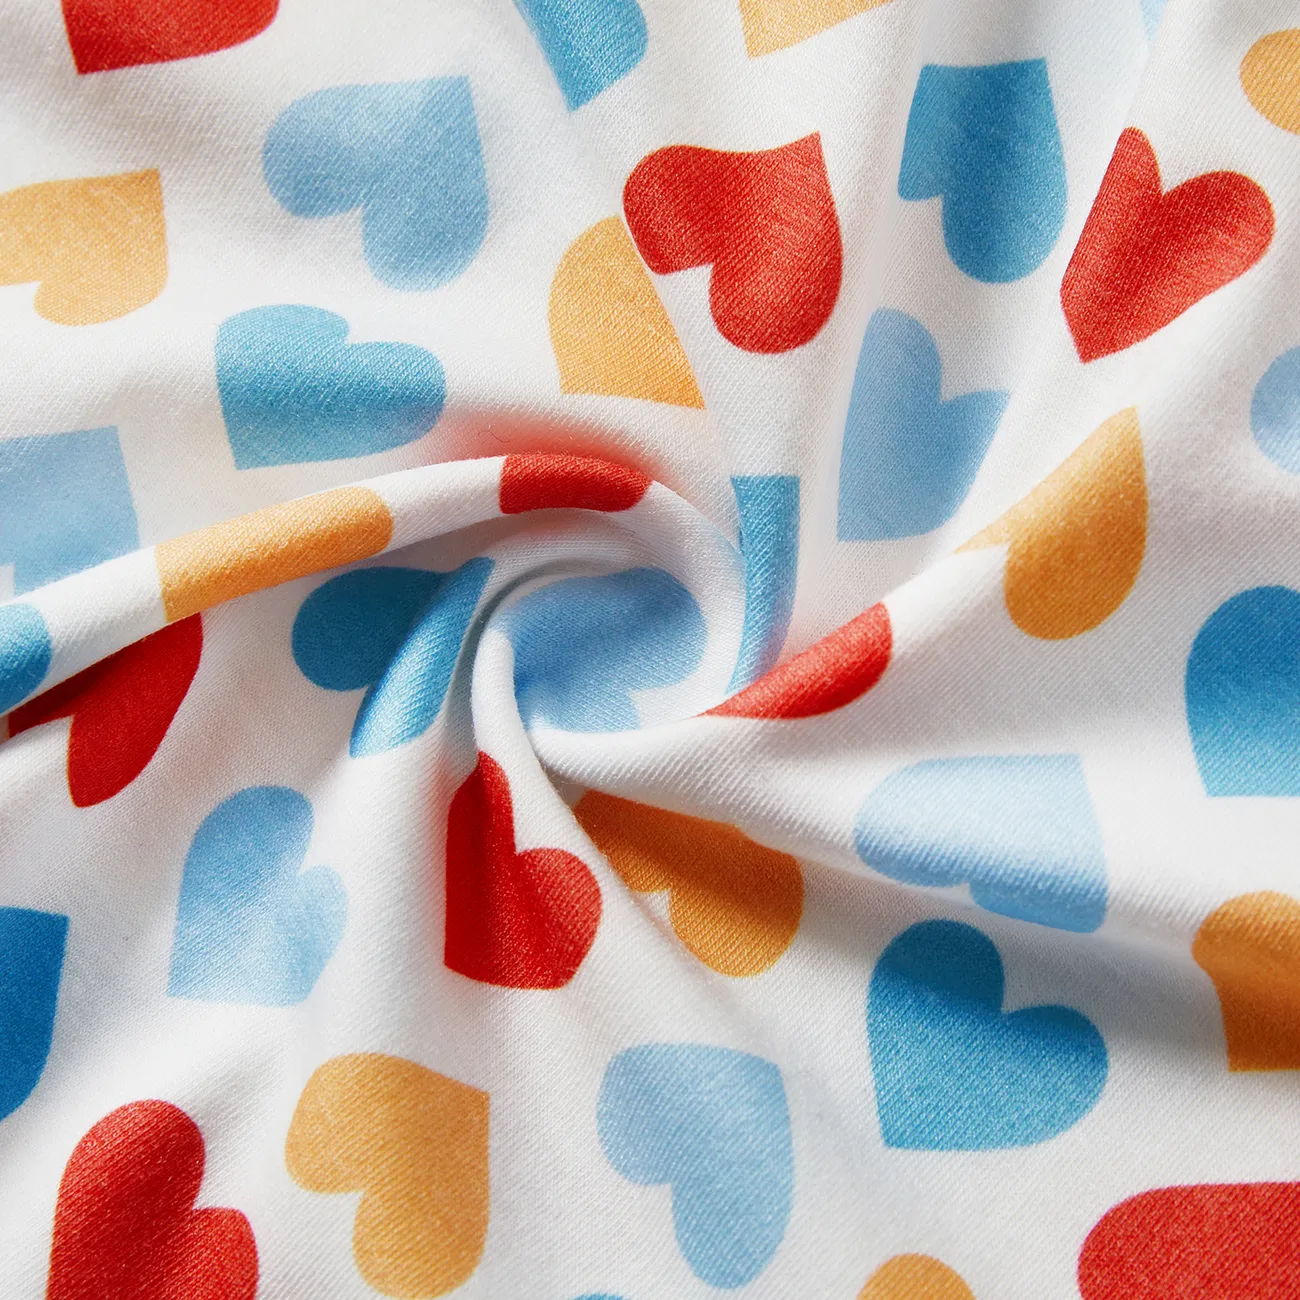 vestido infantil naia™ colorido com estampa de coração e design de laço Branco big image 1